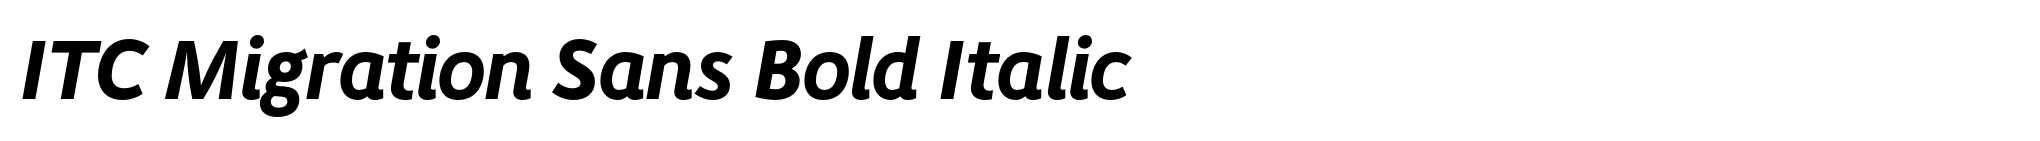 ITC Migration Sans Bold Italic image